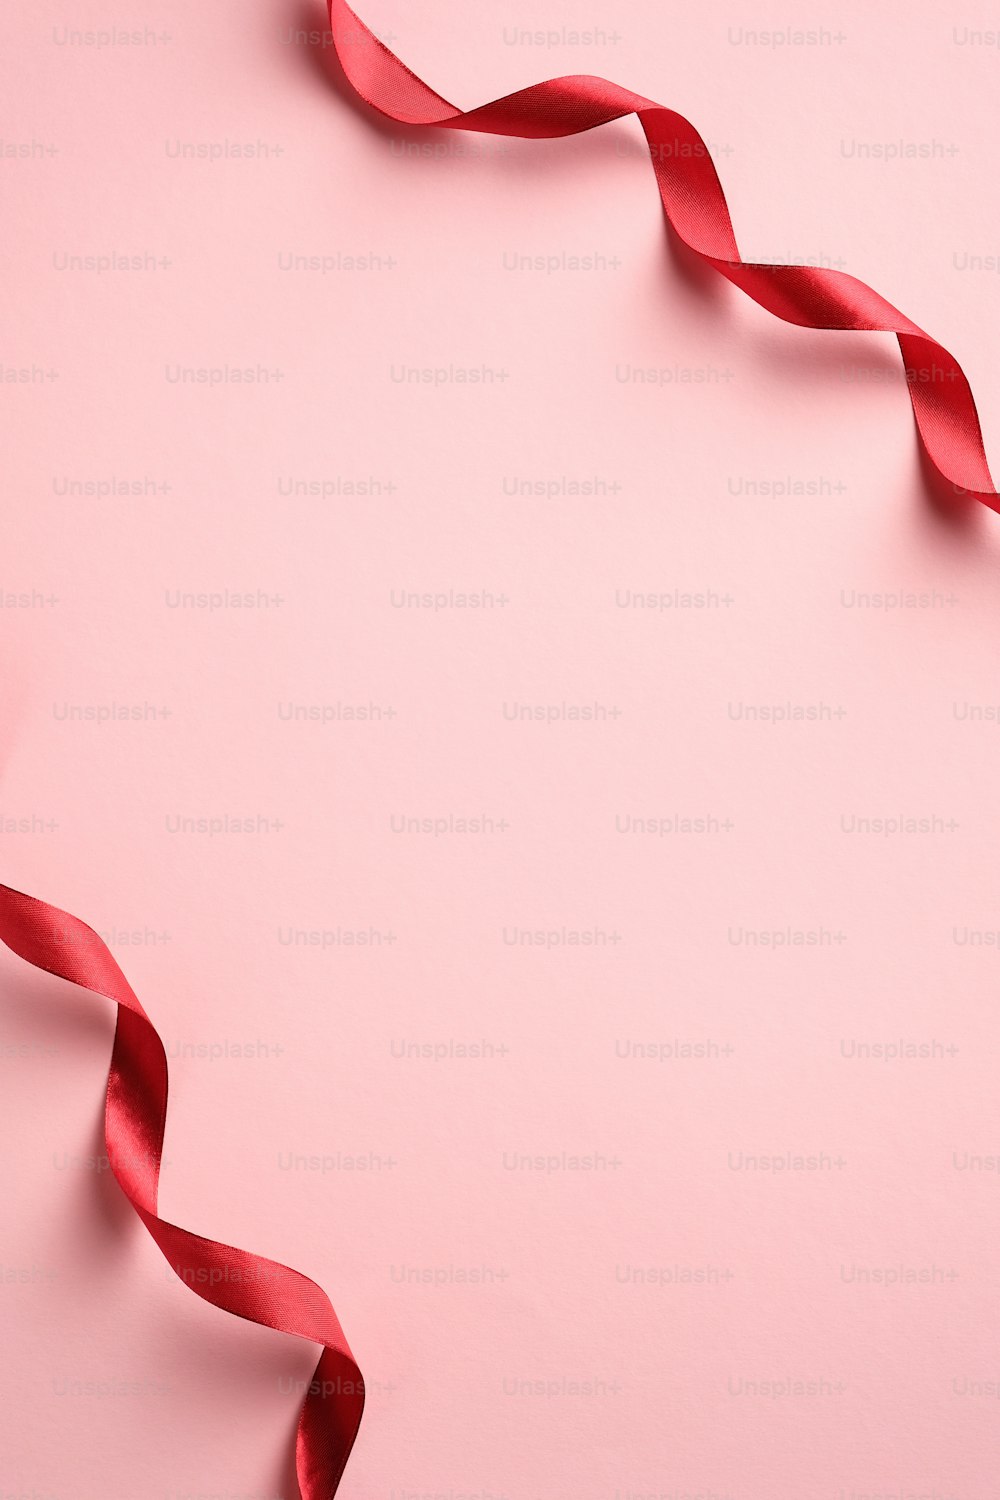 발렌타인 데이, 생일, 어머니의 날 분홍색 배경에 빨간 리본이 있는 수직 배너 템플릿. 미니멀리스트 스타일. 플랫 레이, 평면도.